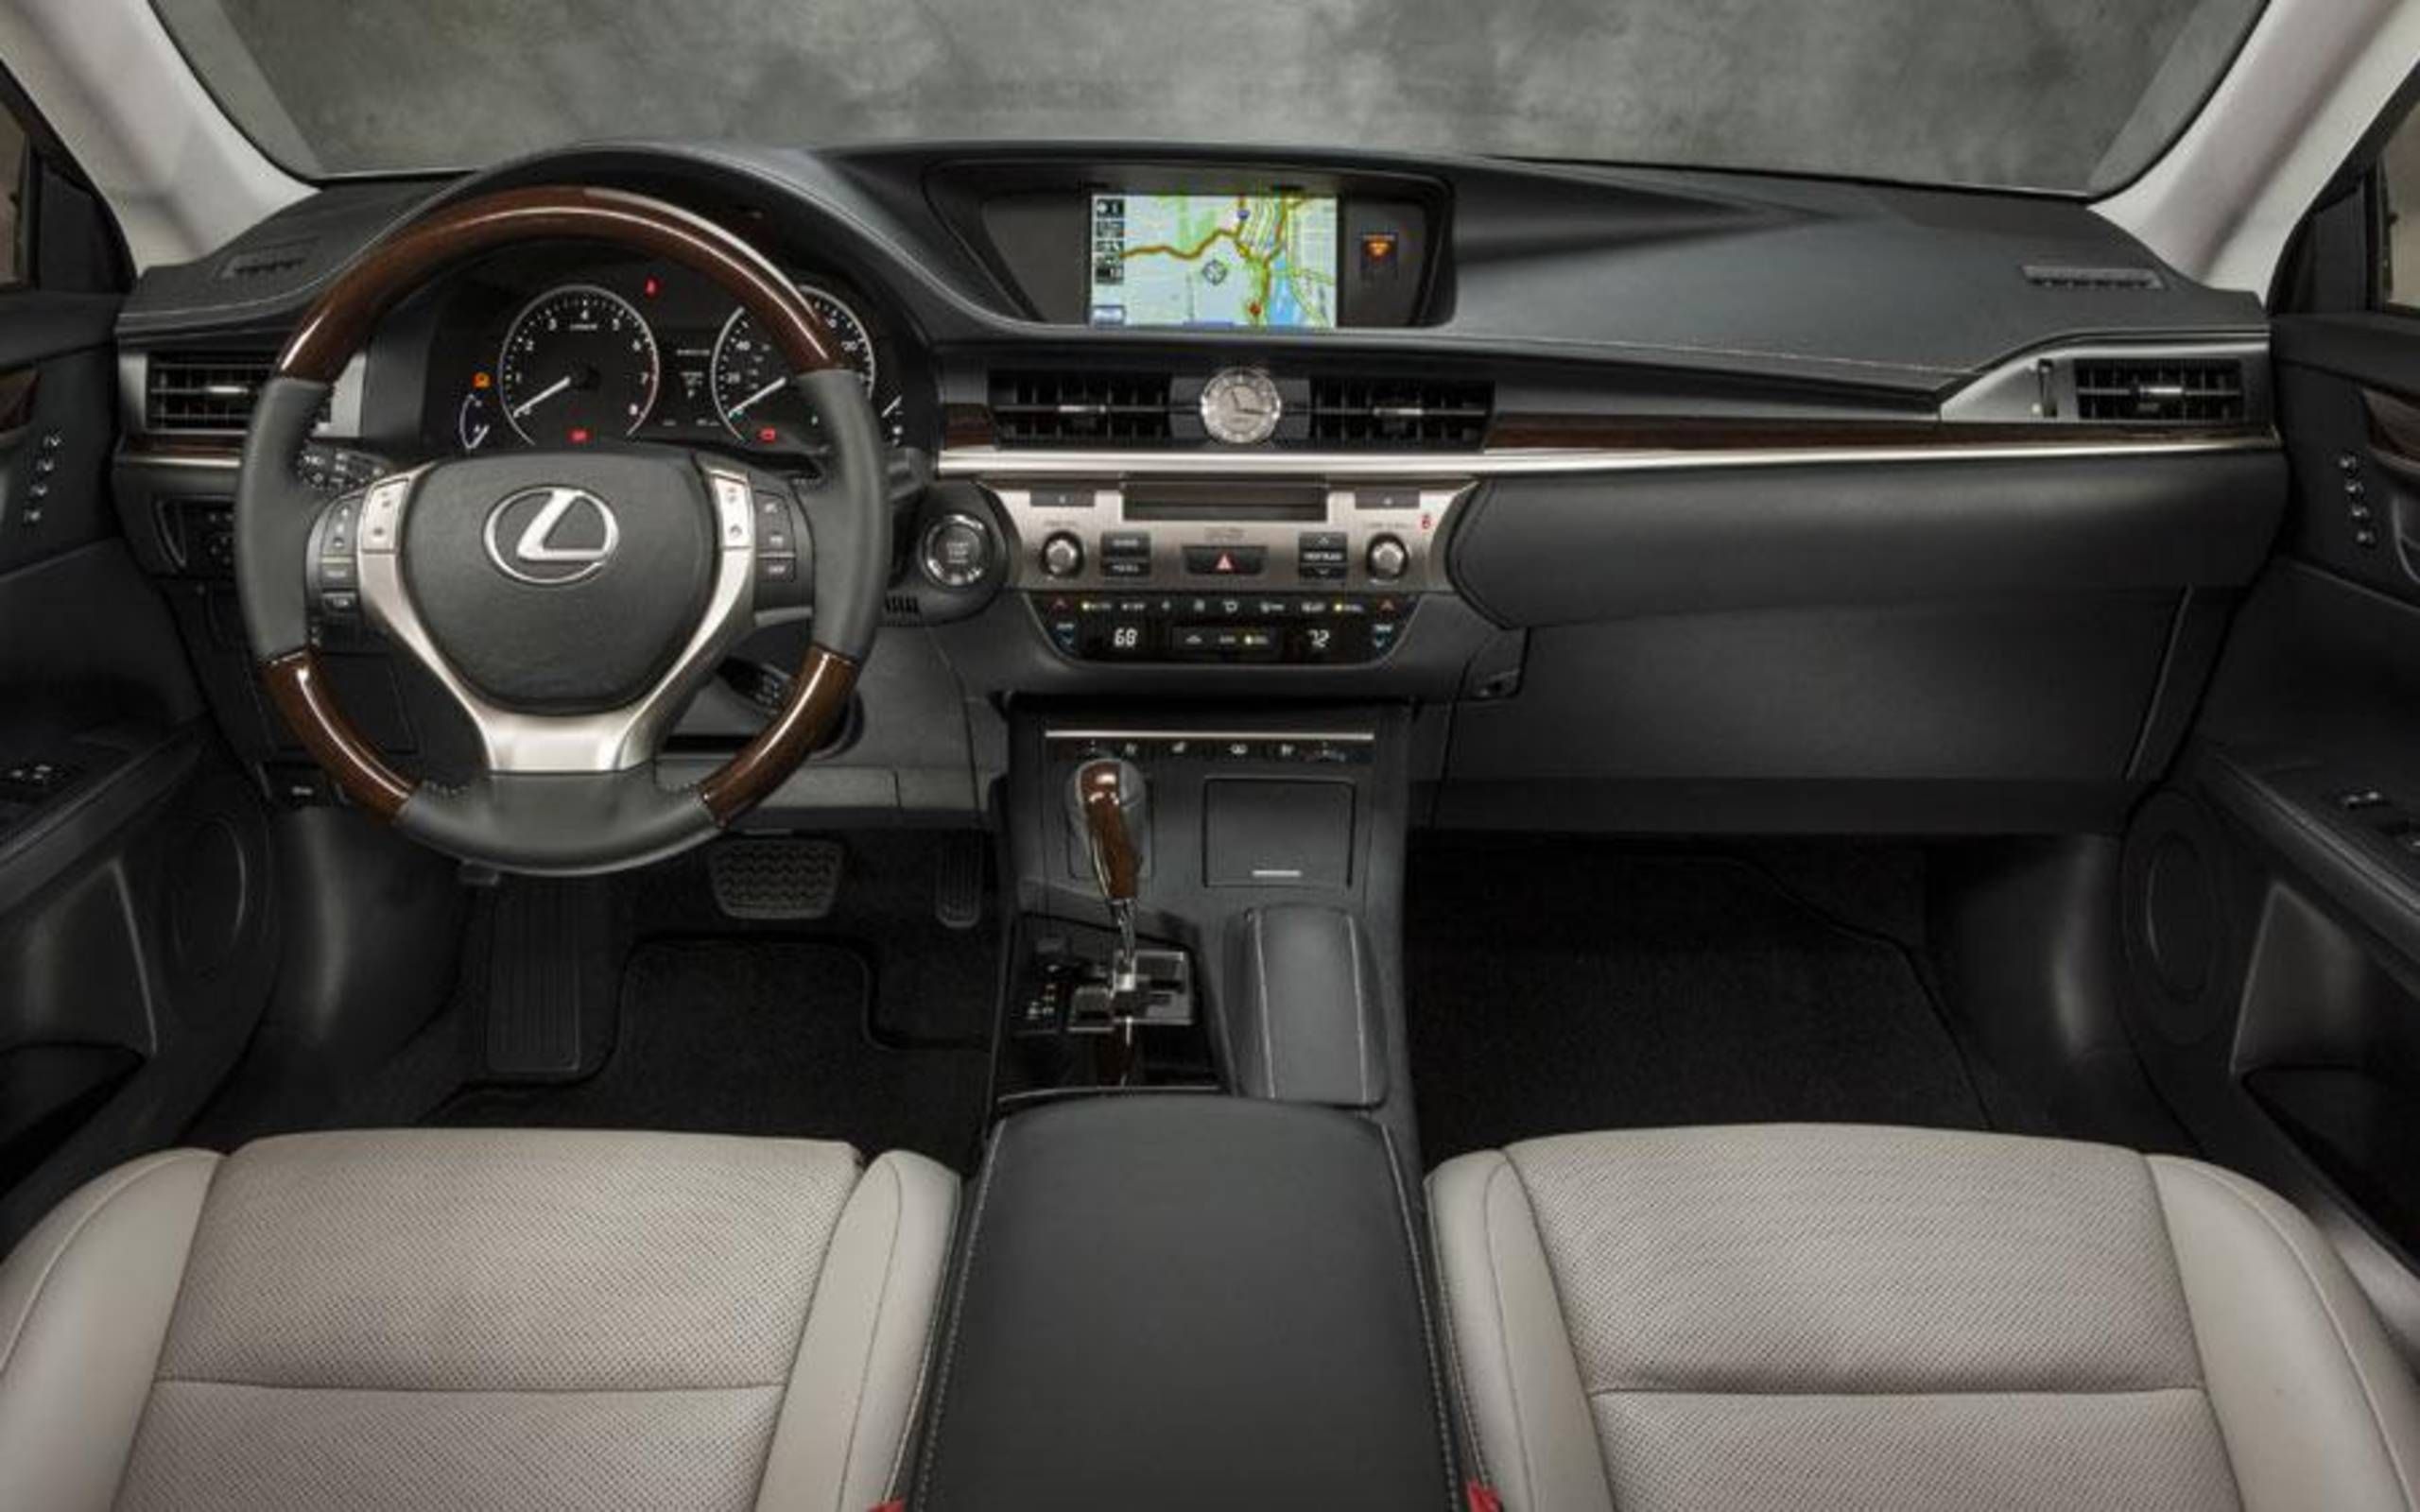 2014 Lexus ES 350 review notes